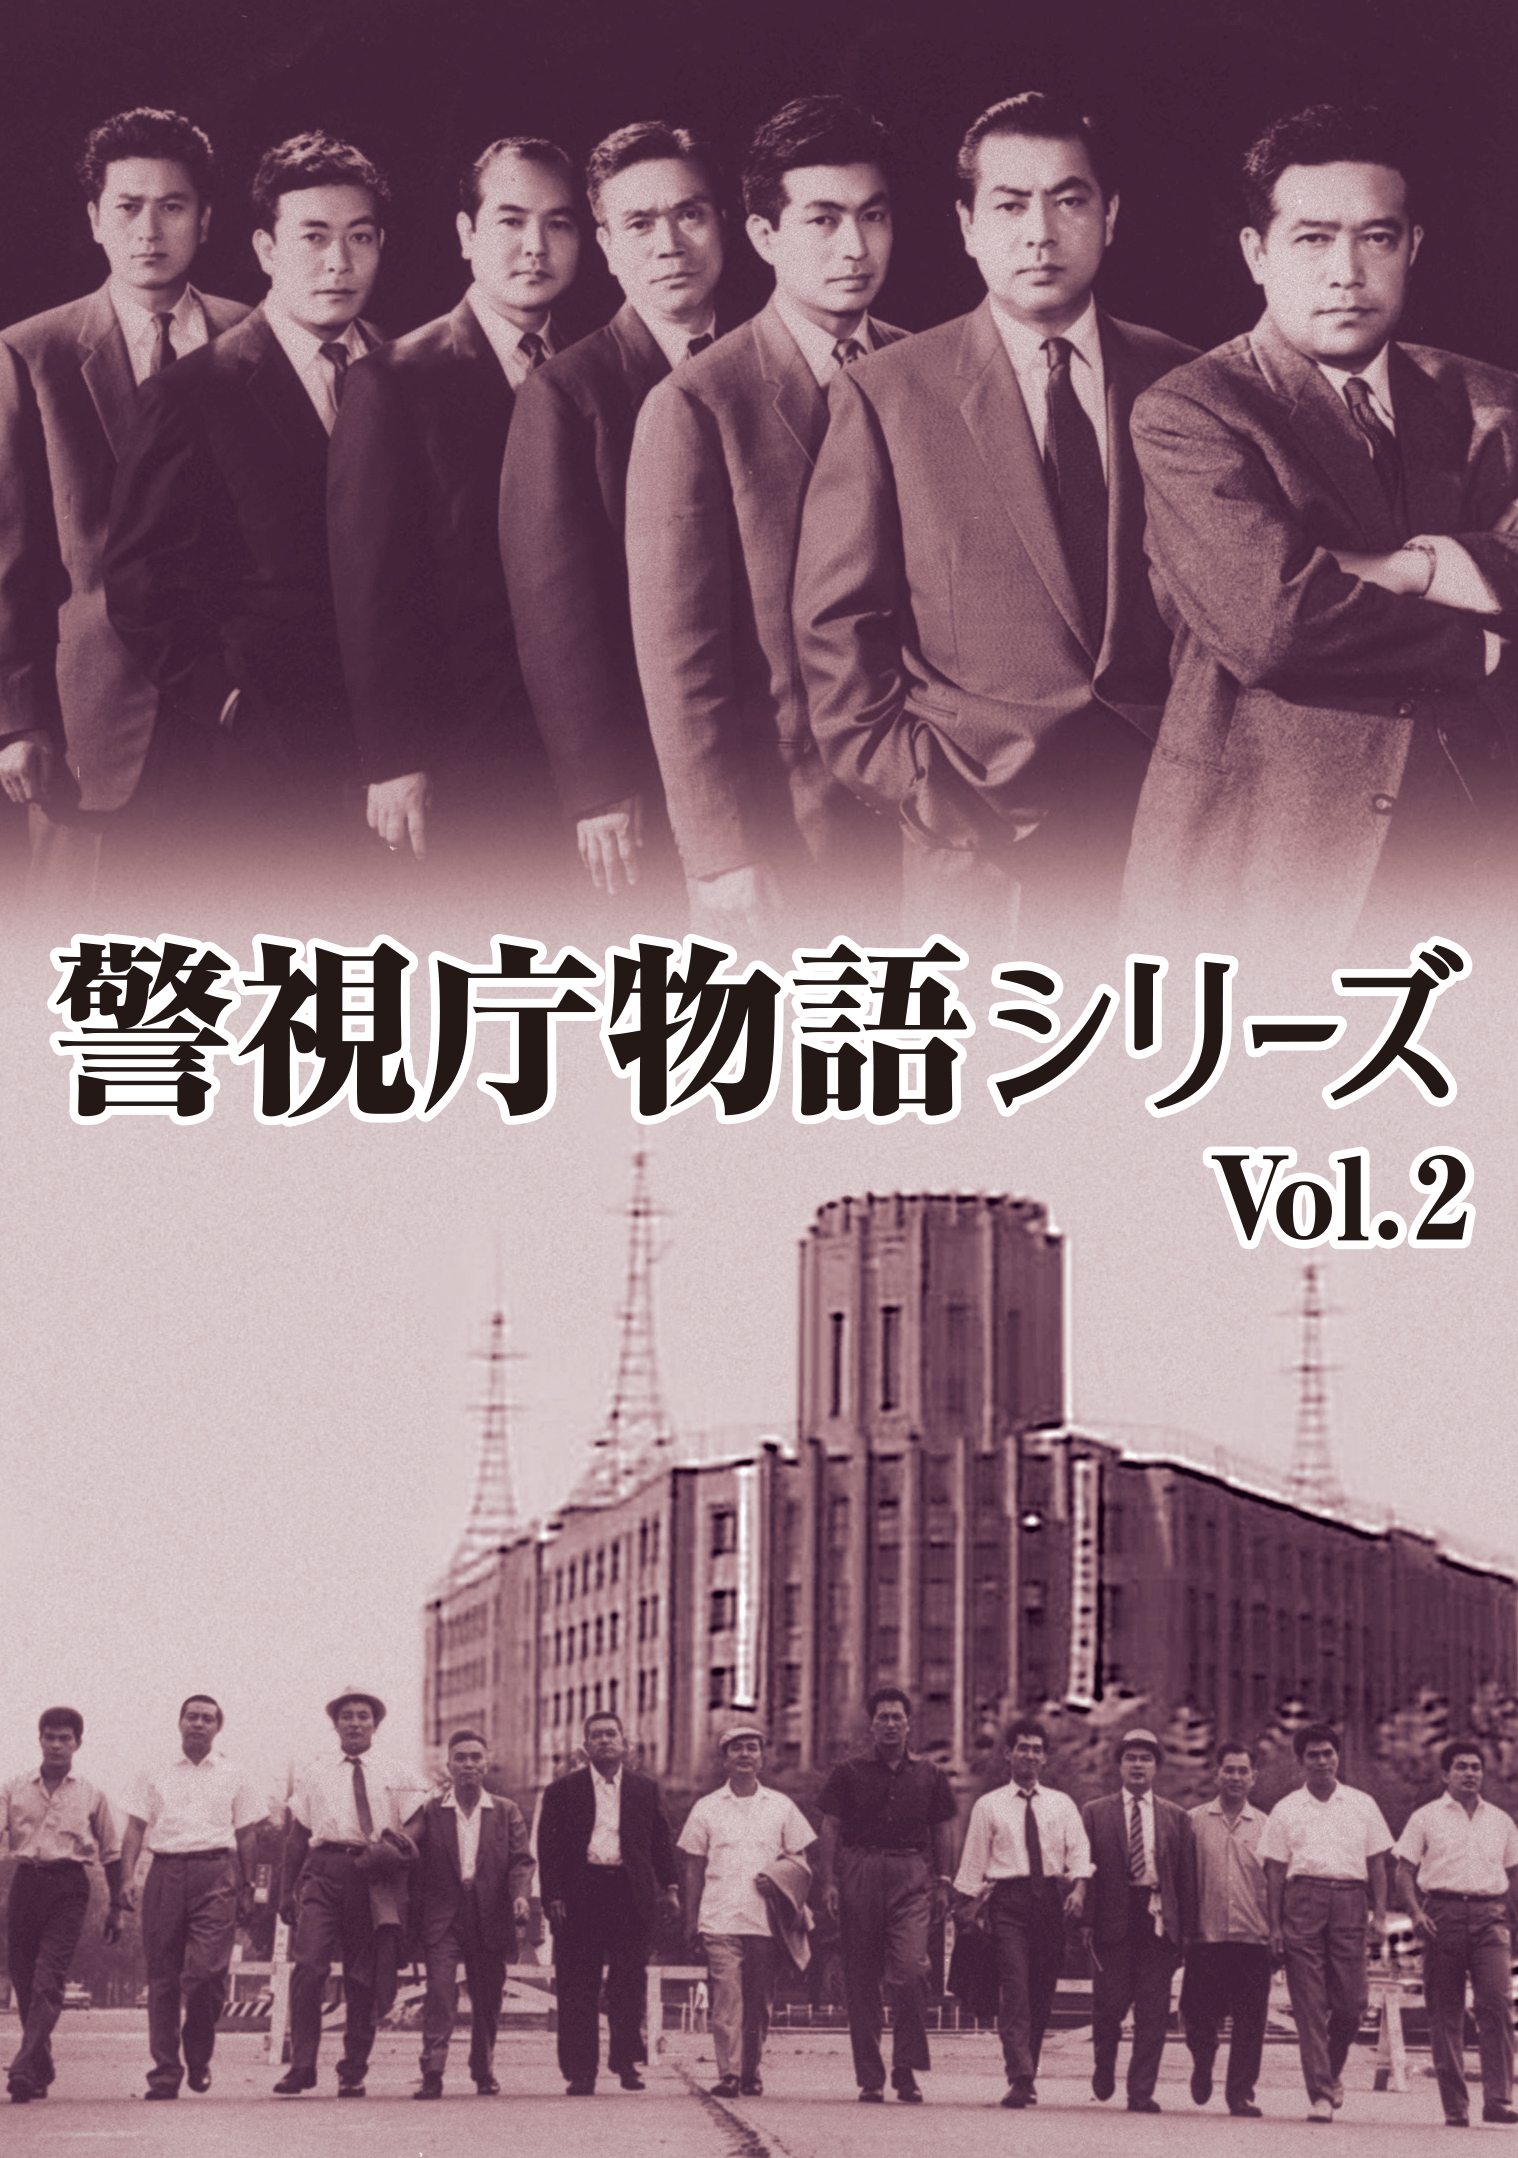 特別機動捜査隊 スペシャルセレクション Vol.2 デジタルリマスター版 